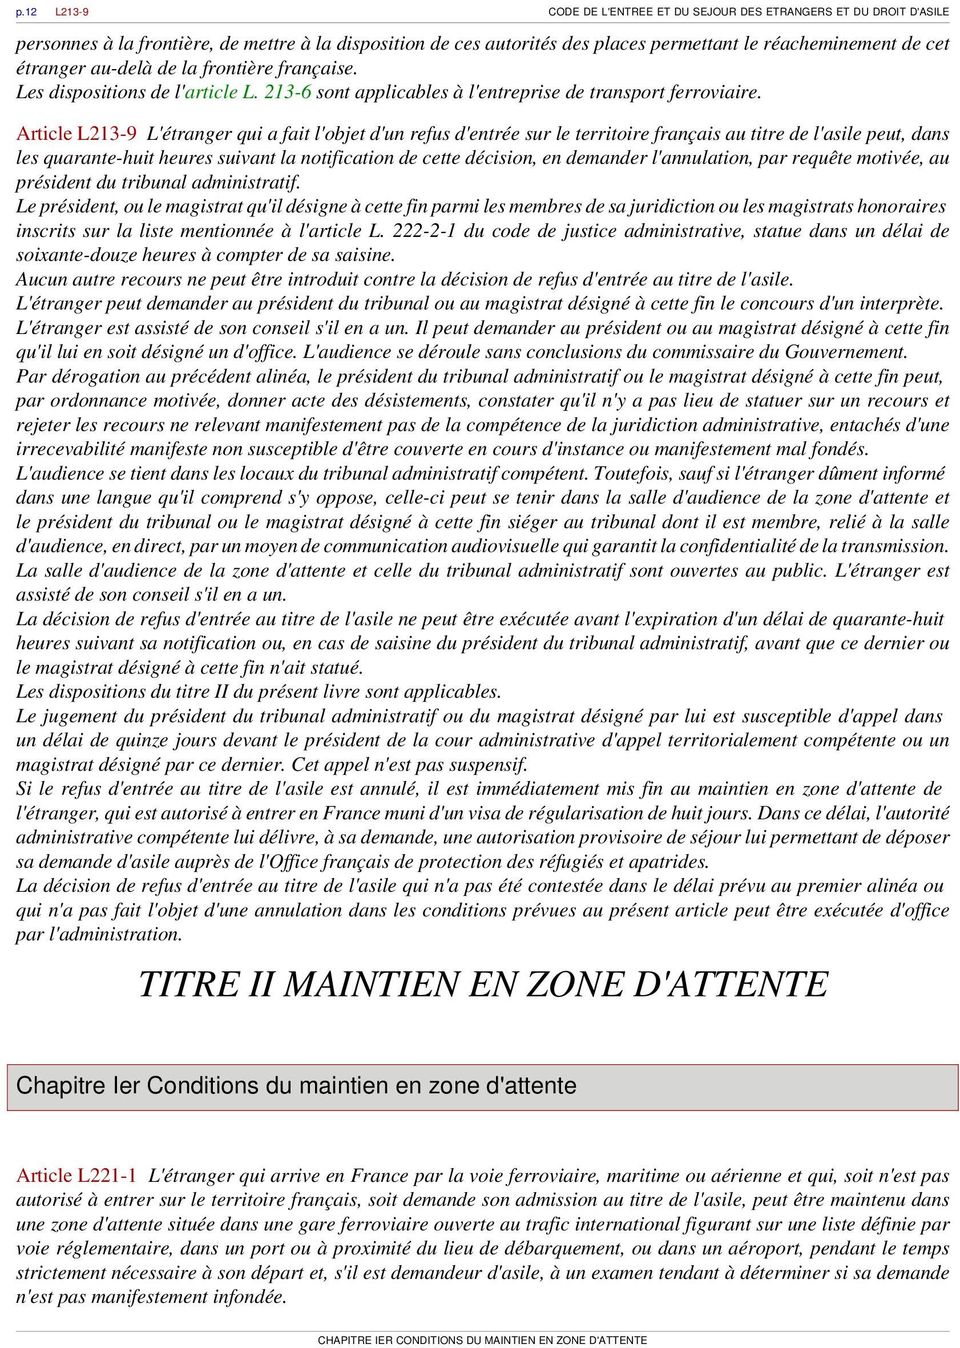 Article L213-9 L'étranger qui a fait l'objet d'un refus d'entrée sur le territoire français au titre de l'asile peut, dans les quarante-huit heures suivant la notification de cette décision, en